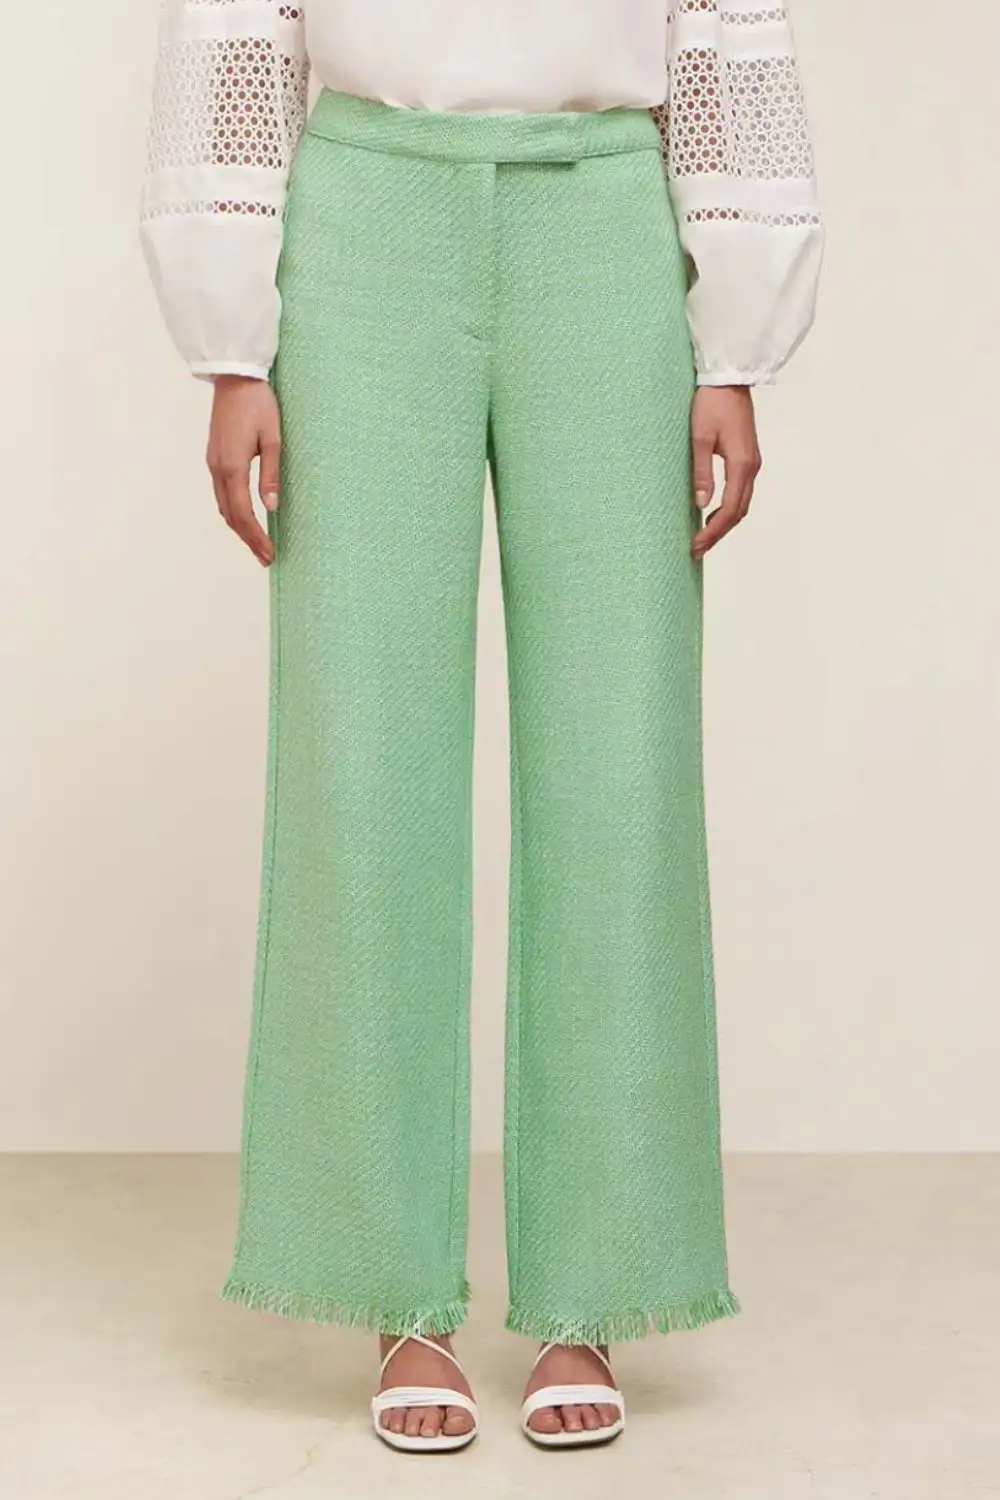 pantalones verdes 10